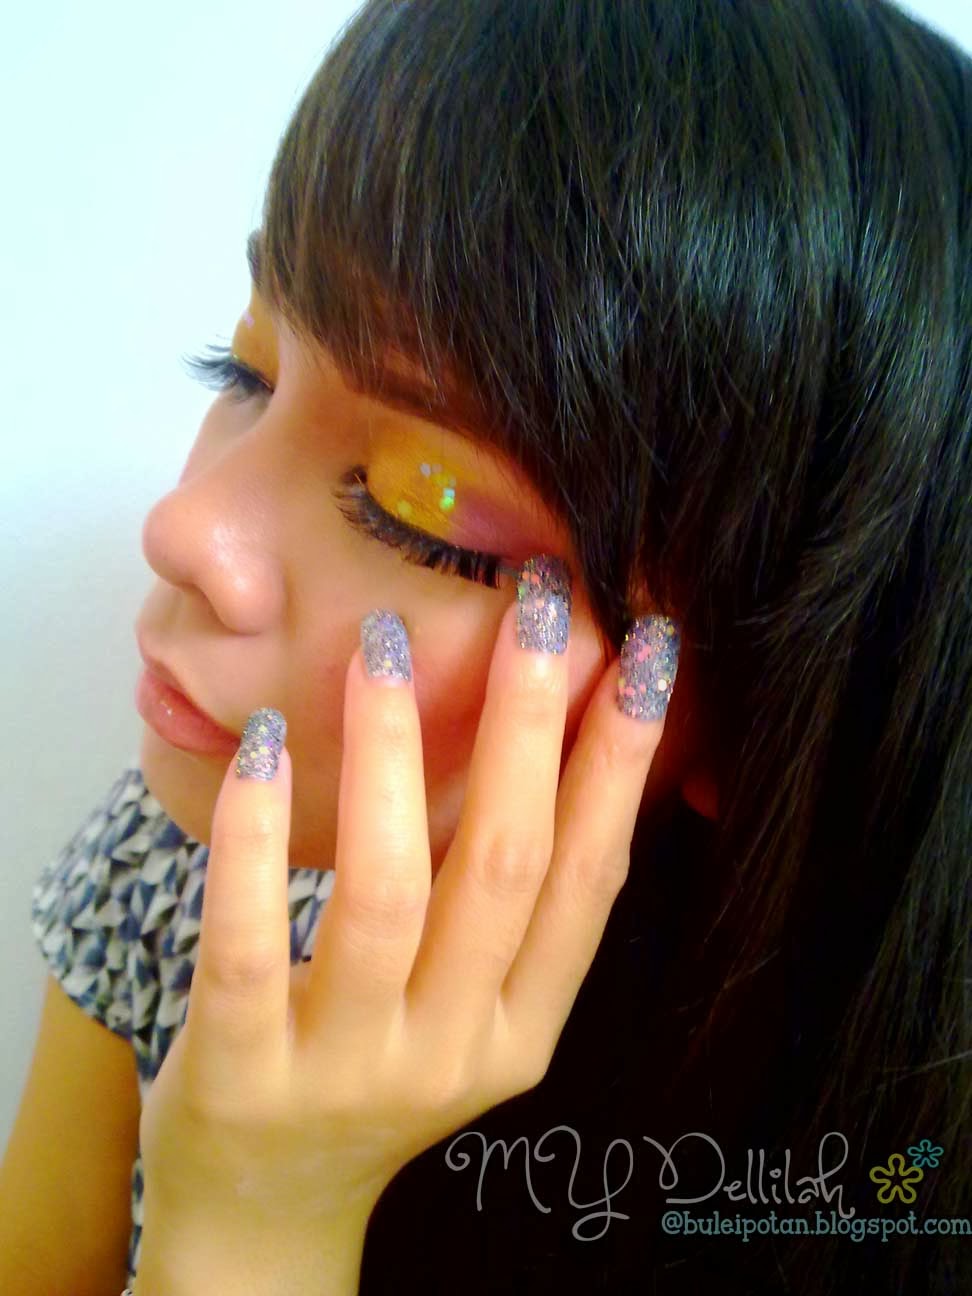 Colorfull makeup